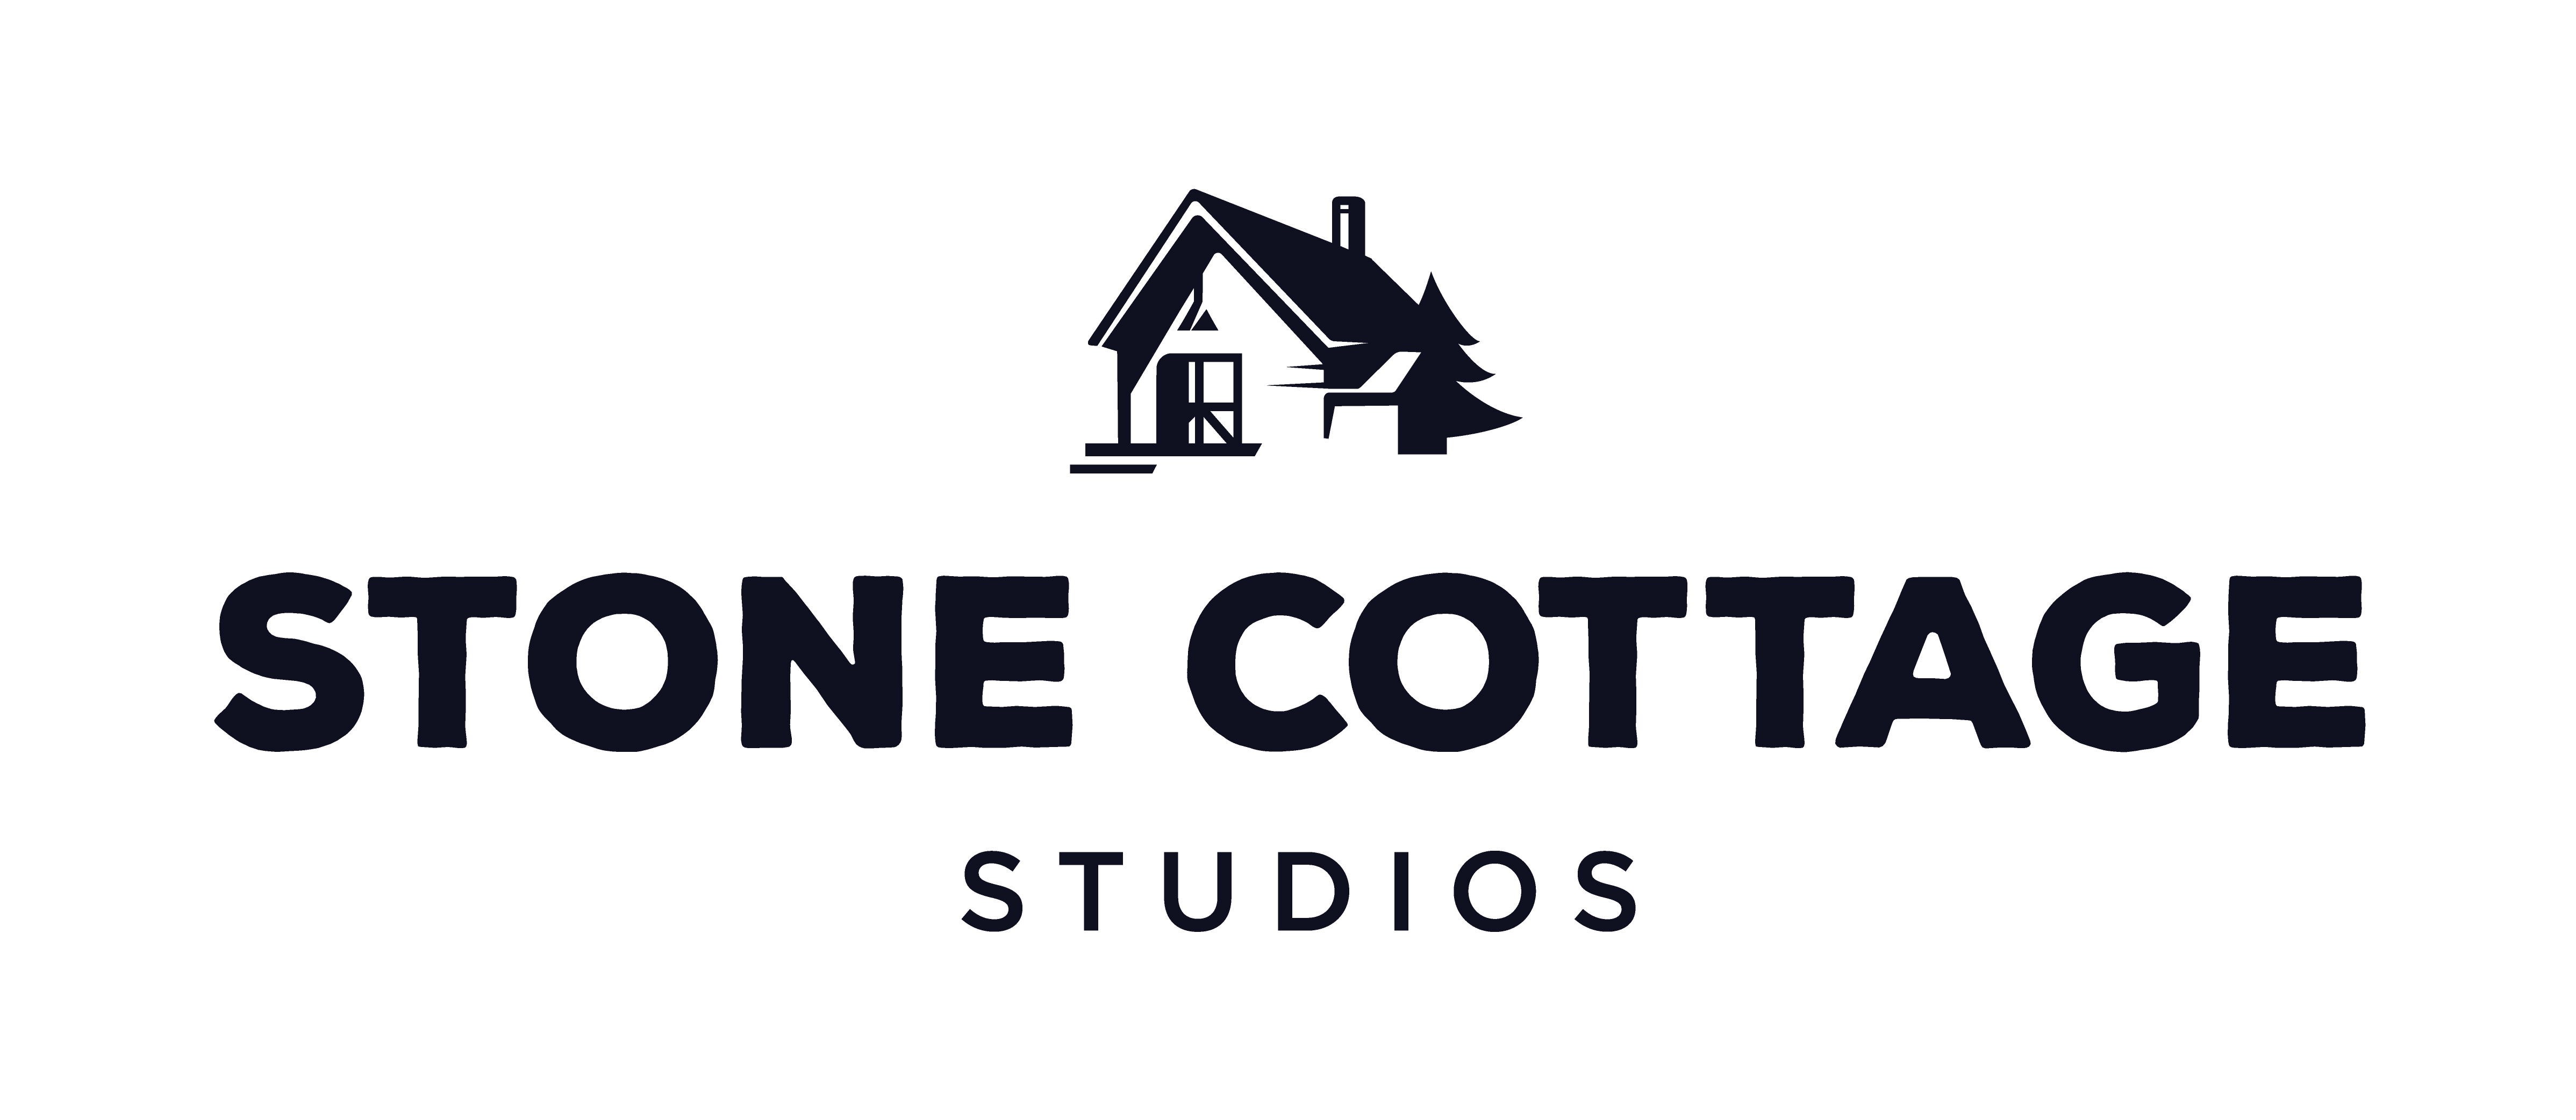 Stone Cottage Studios